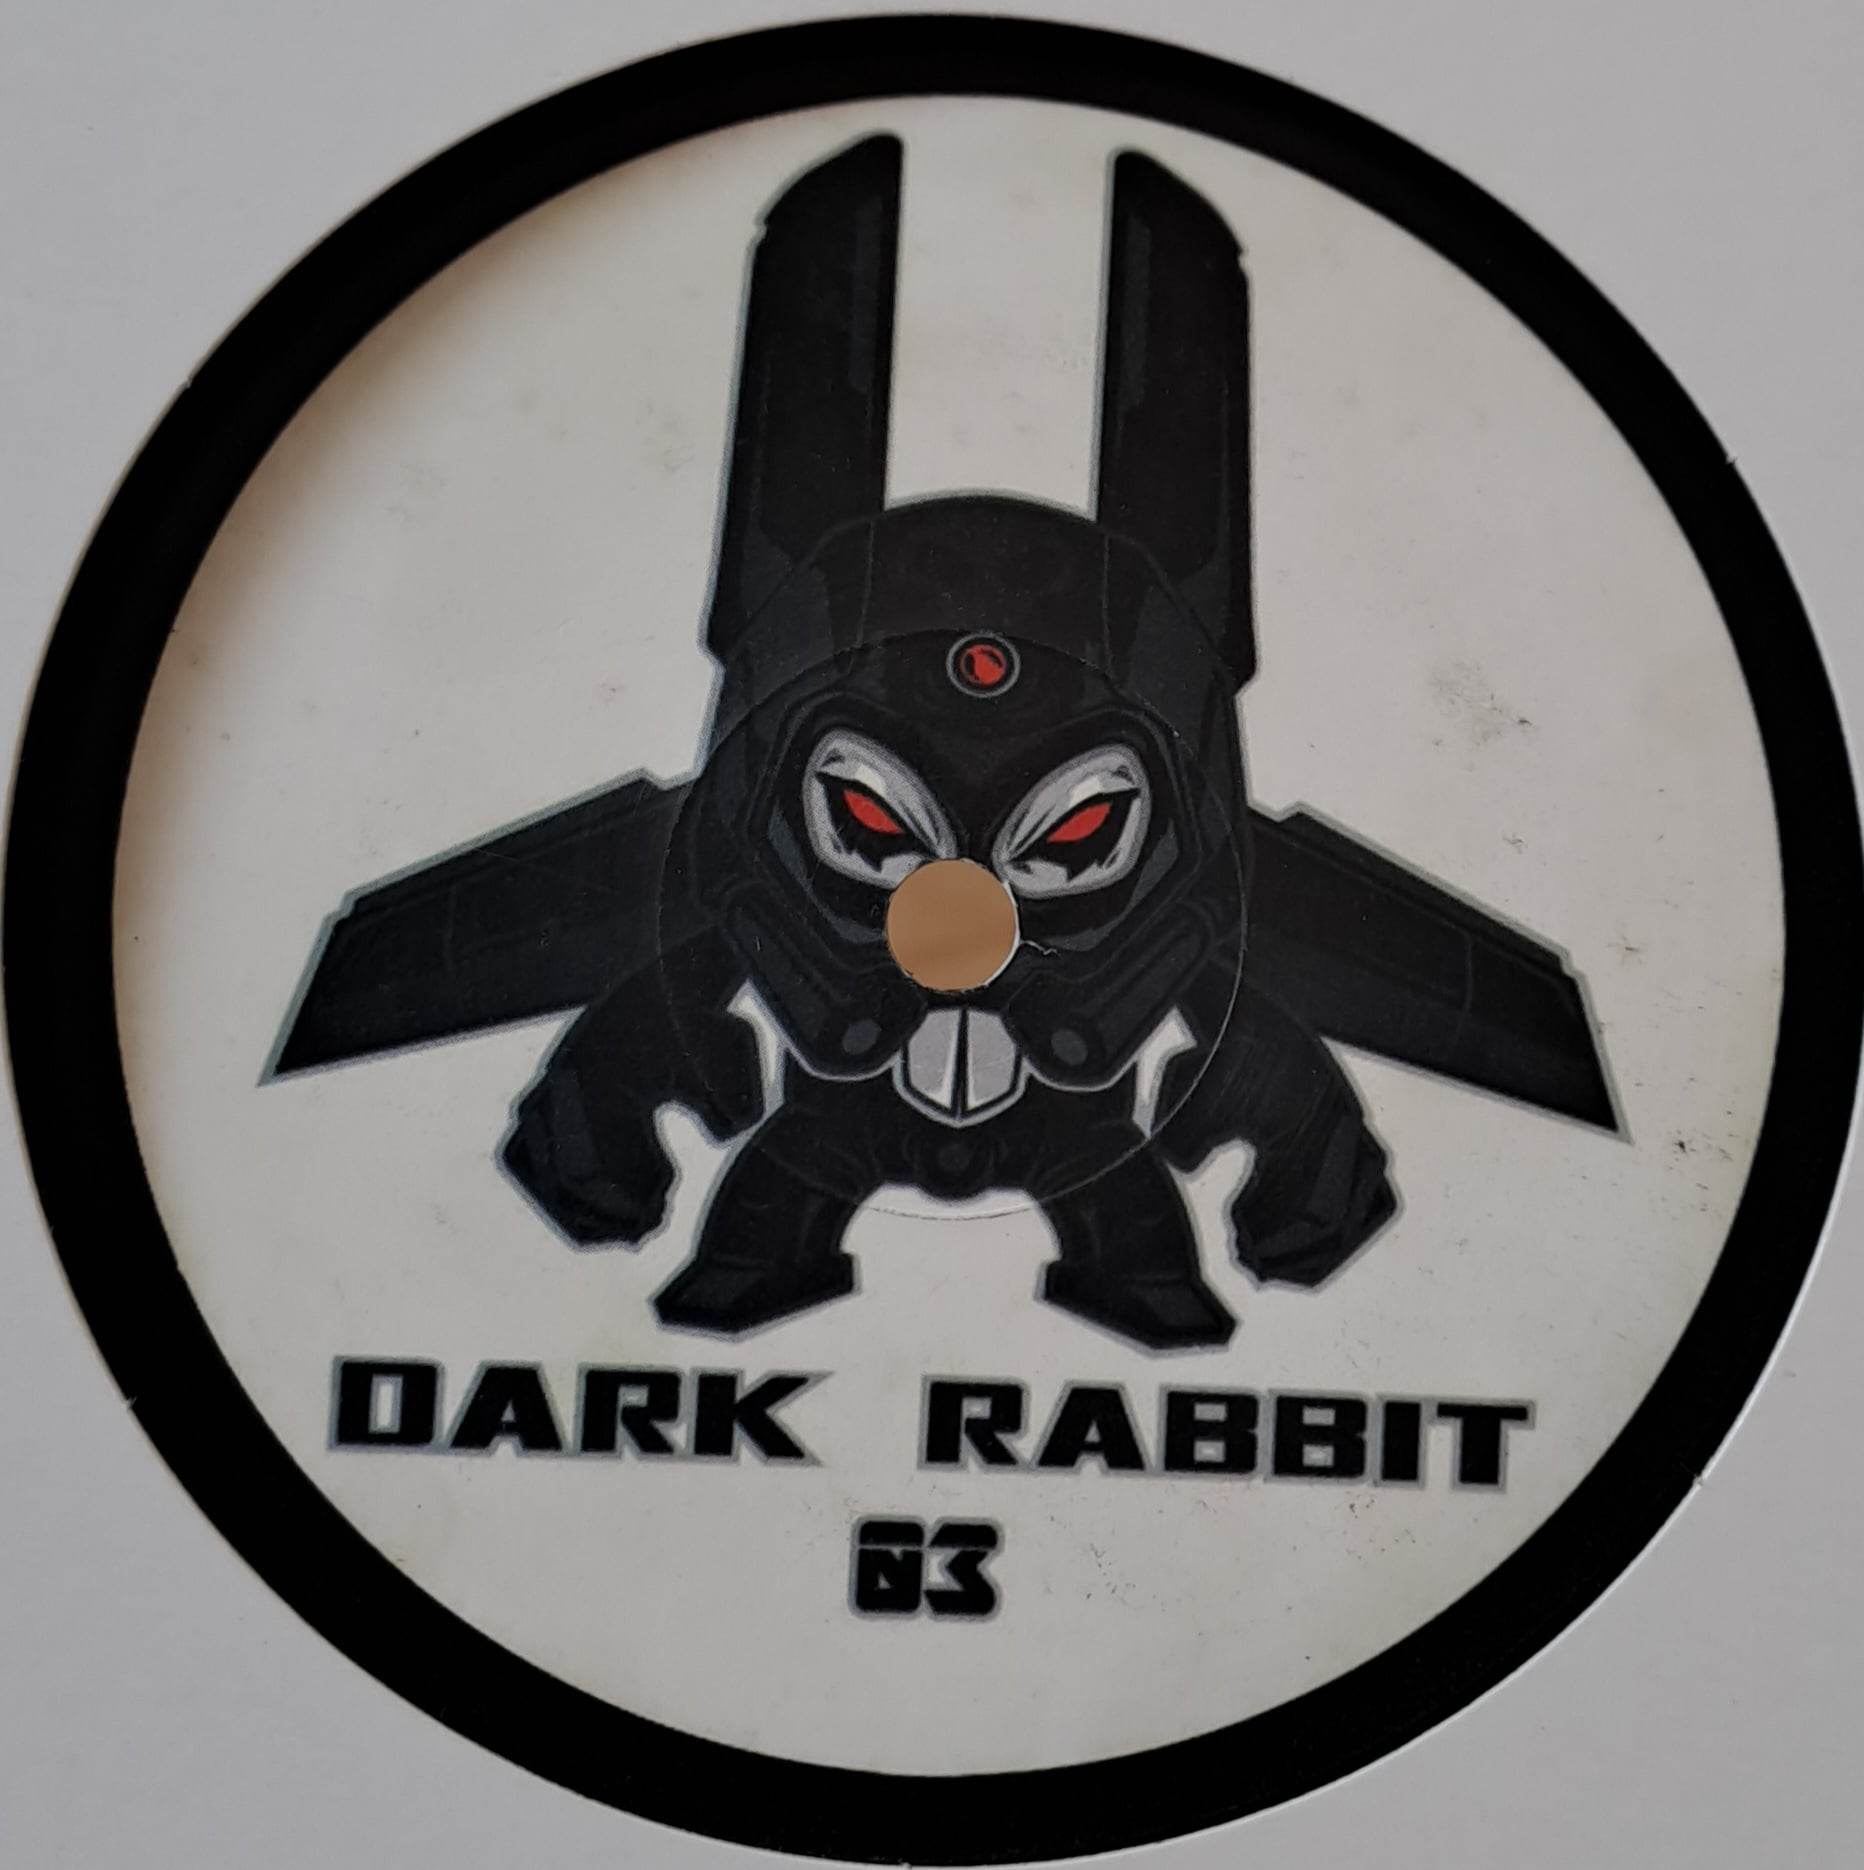 Dark Rabbit 03 - vinyle tribecore